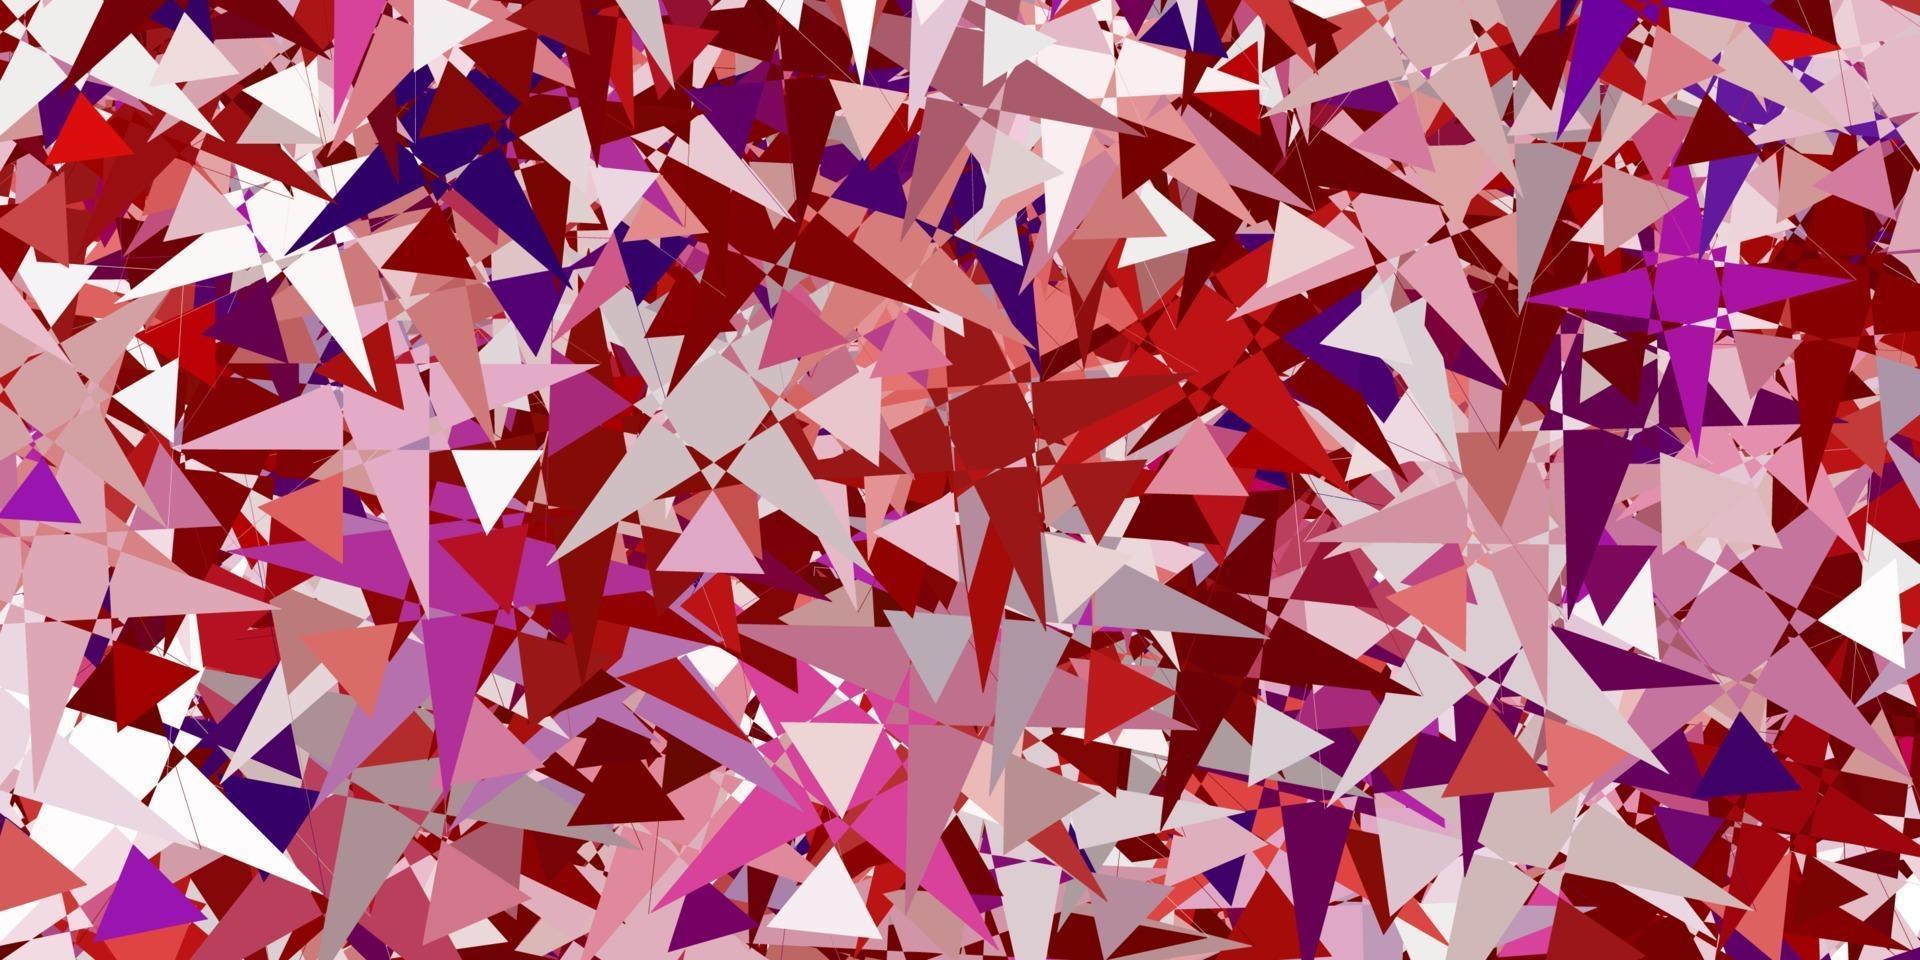 modelo de vetor rosa claro, vermelho com formas de triângulo.